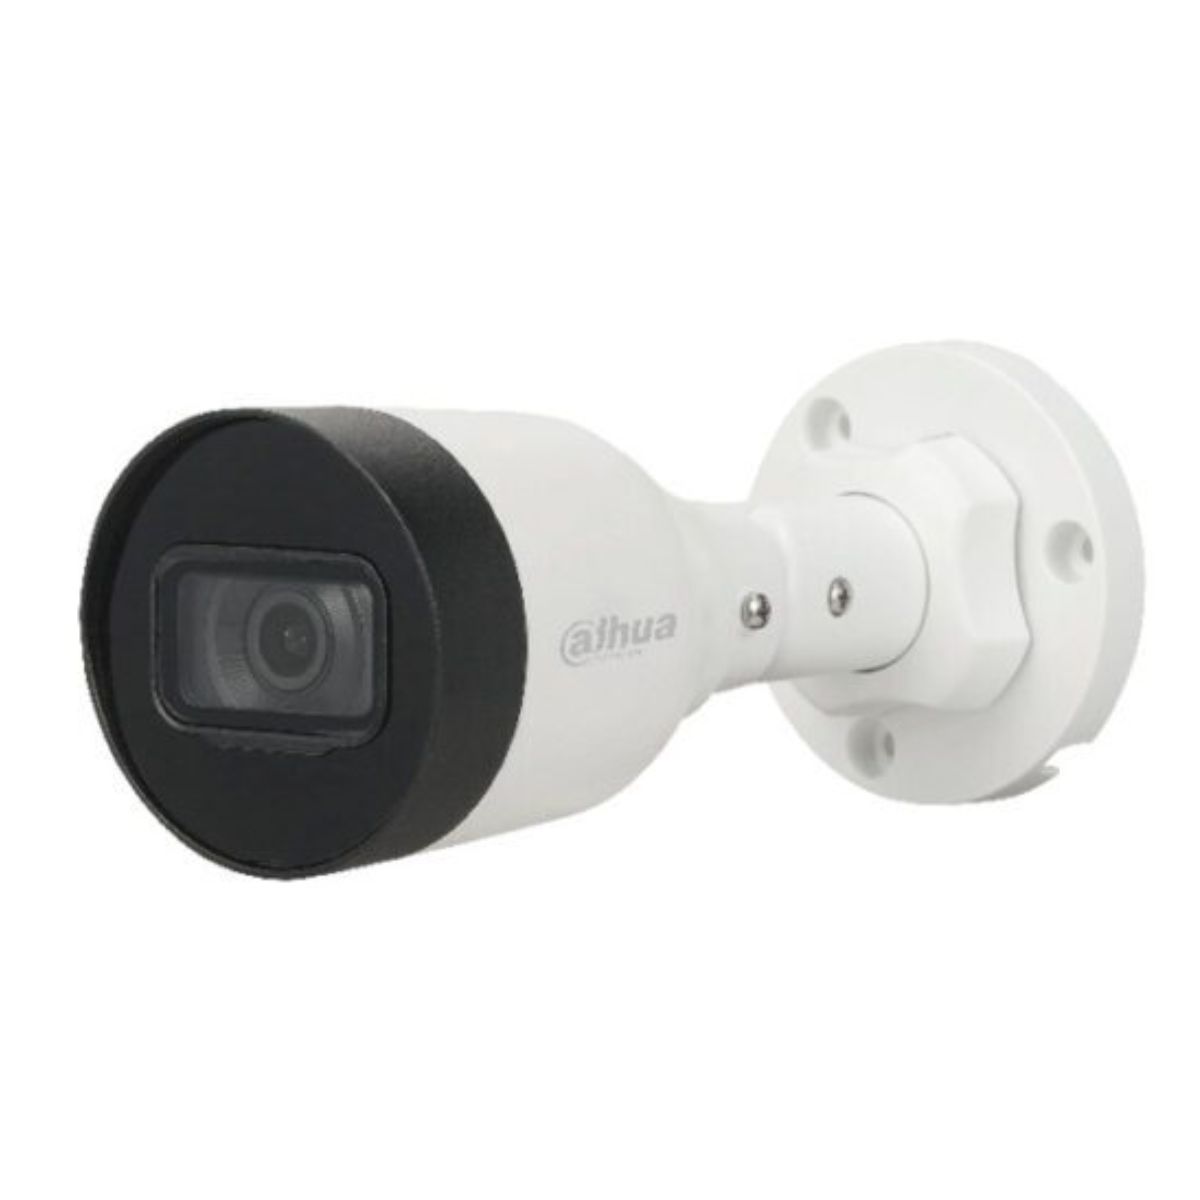 Camera thân IP hồng ngoại 30m Dahua DH-IPC-HFW1430S1-A-S5 4MP, tích hợp mic thu âm thanh